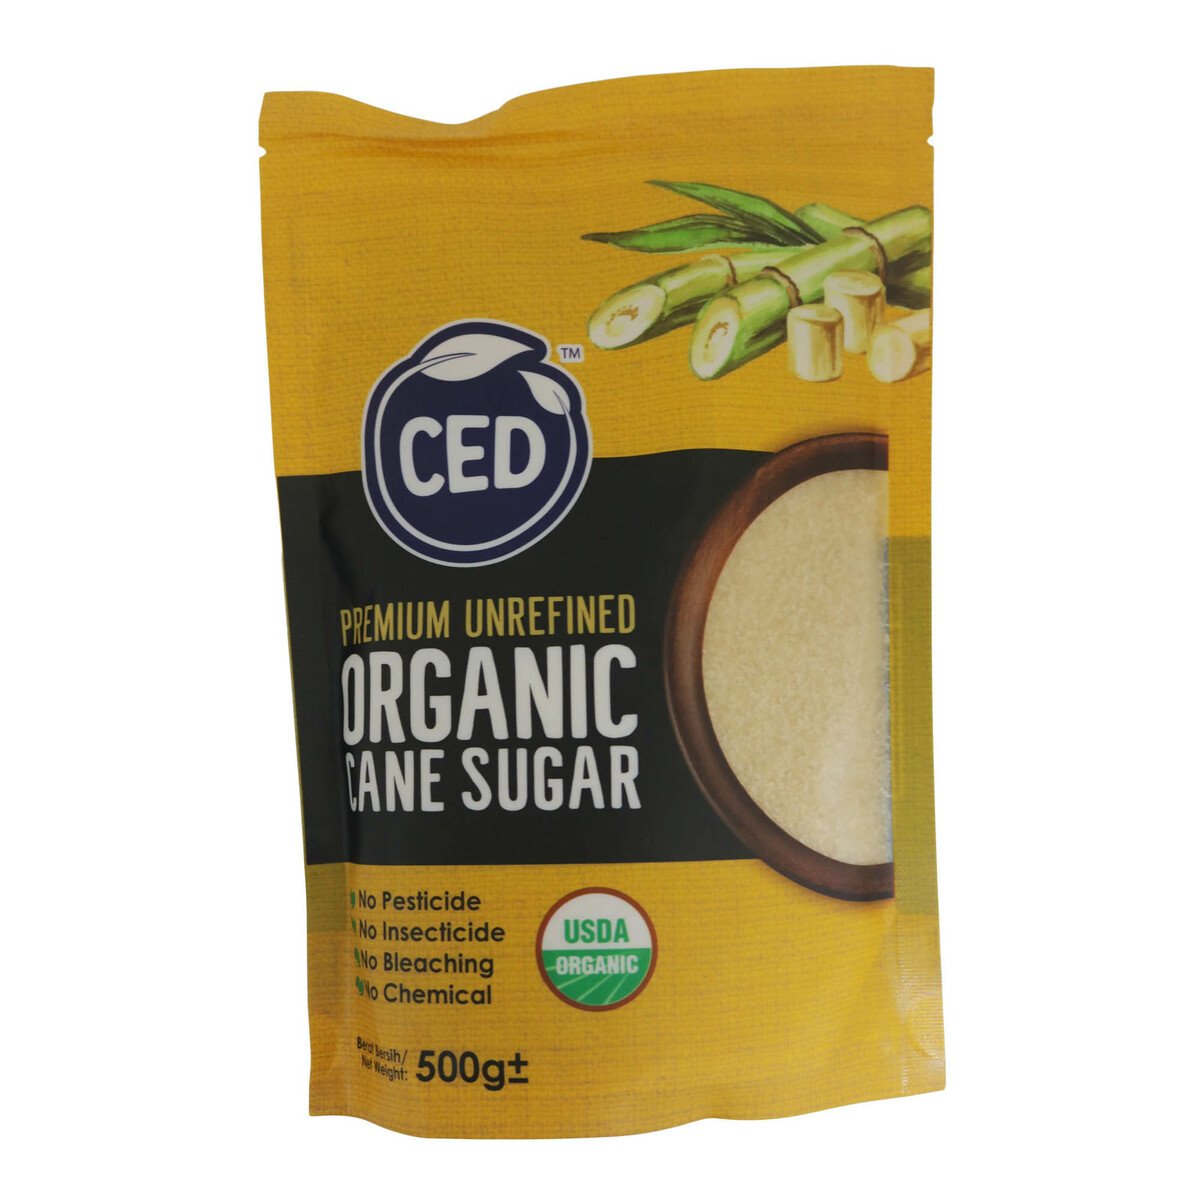 Ced Organic White Sugar 500g